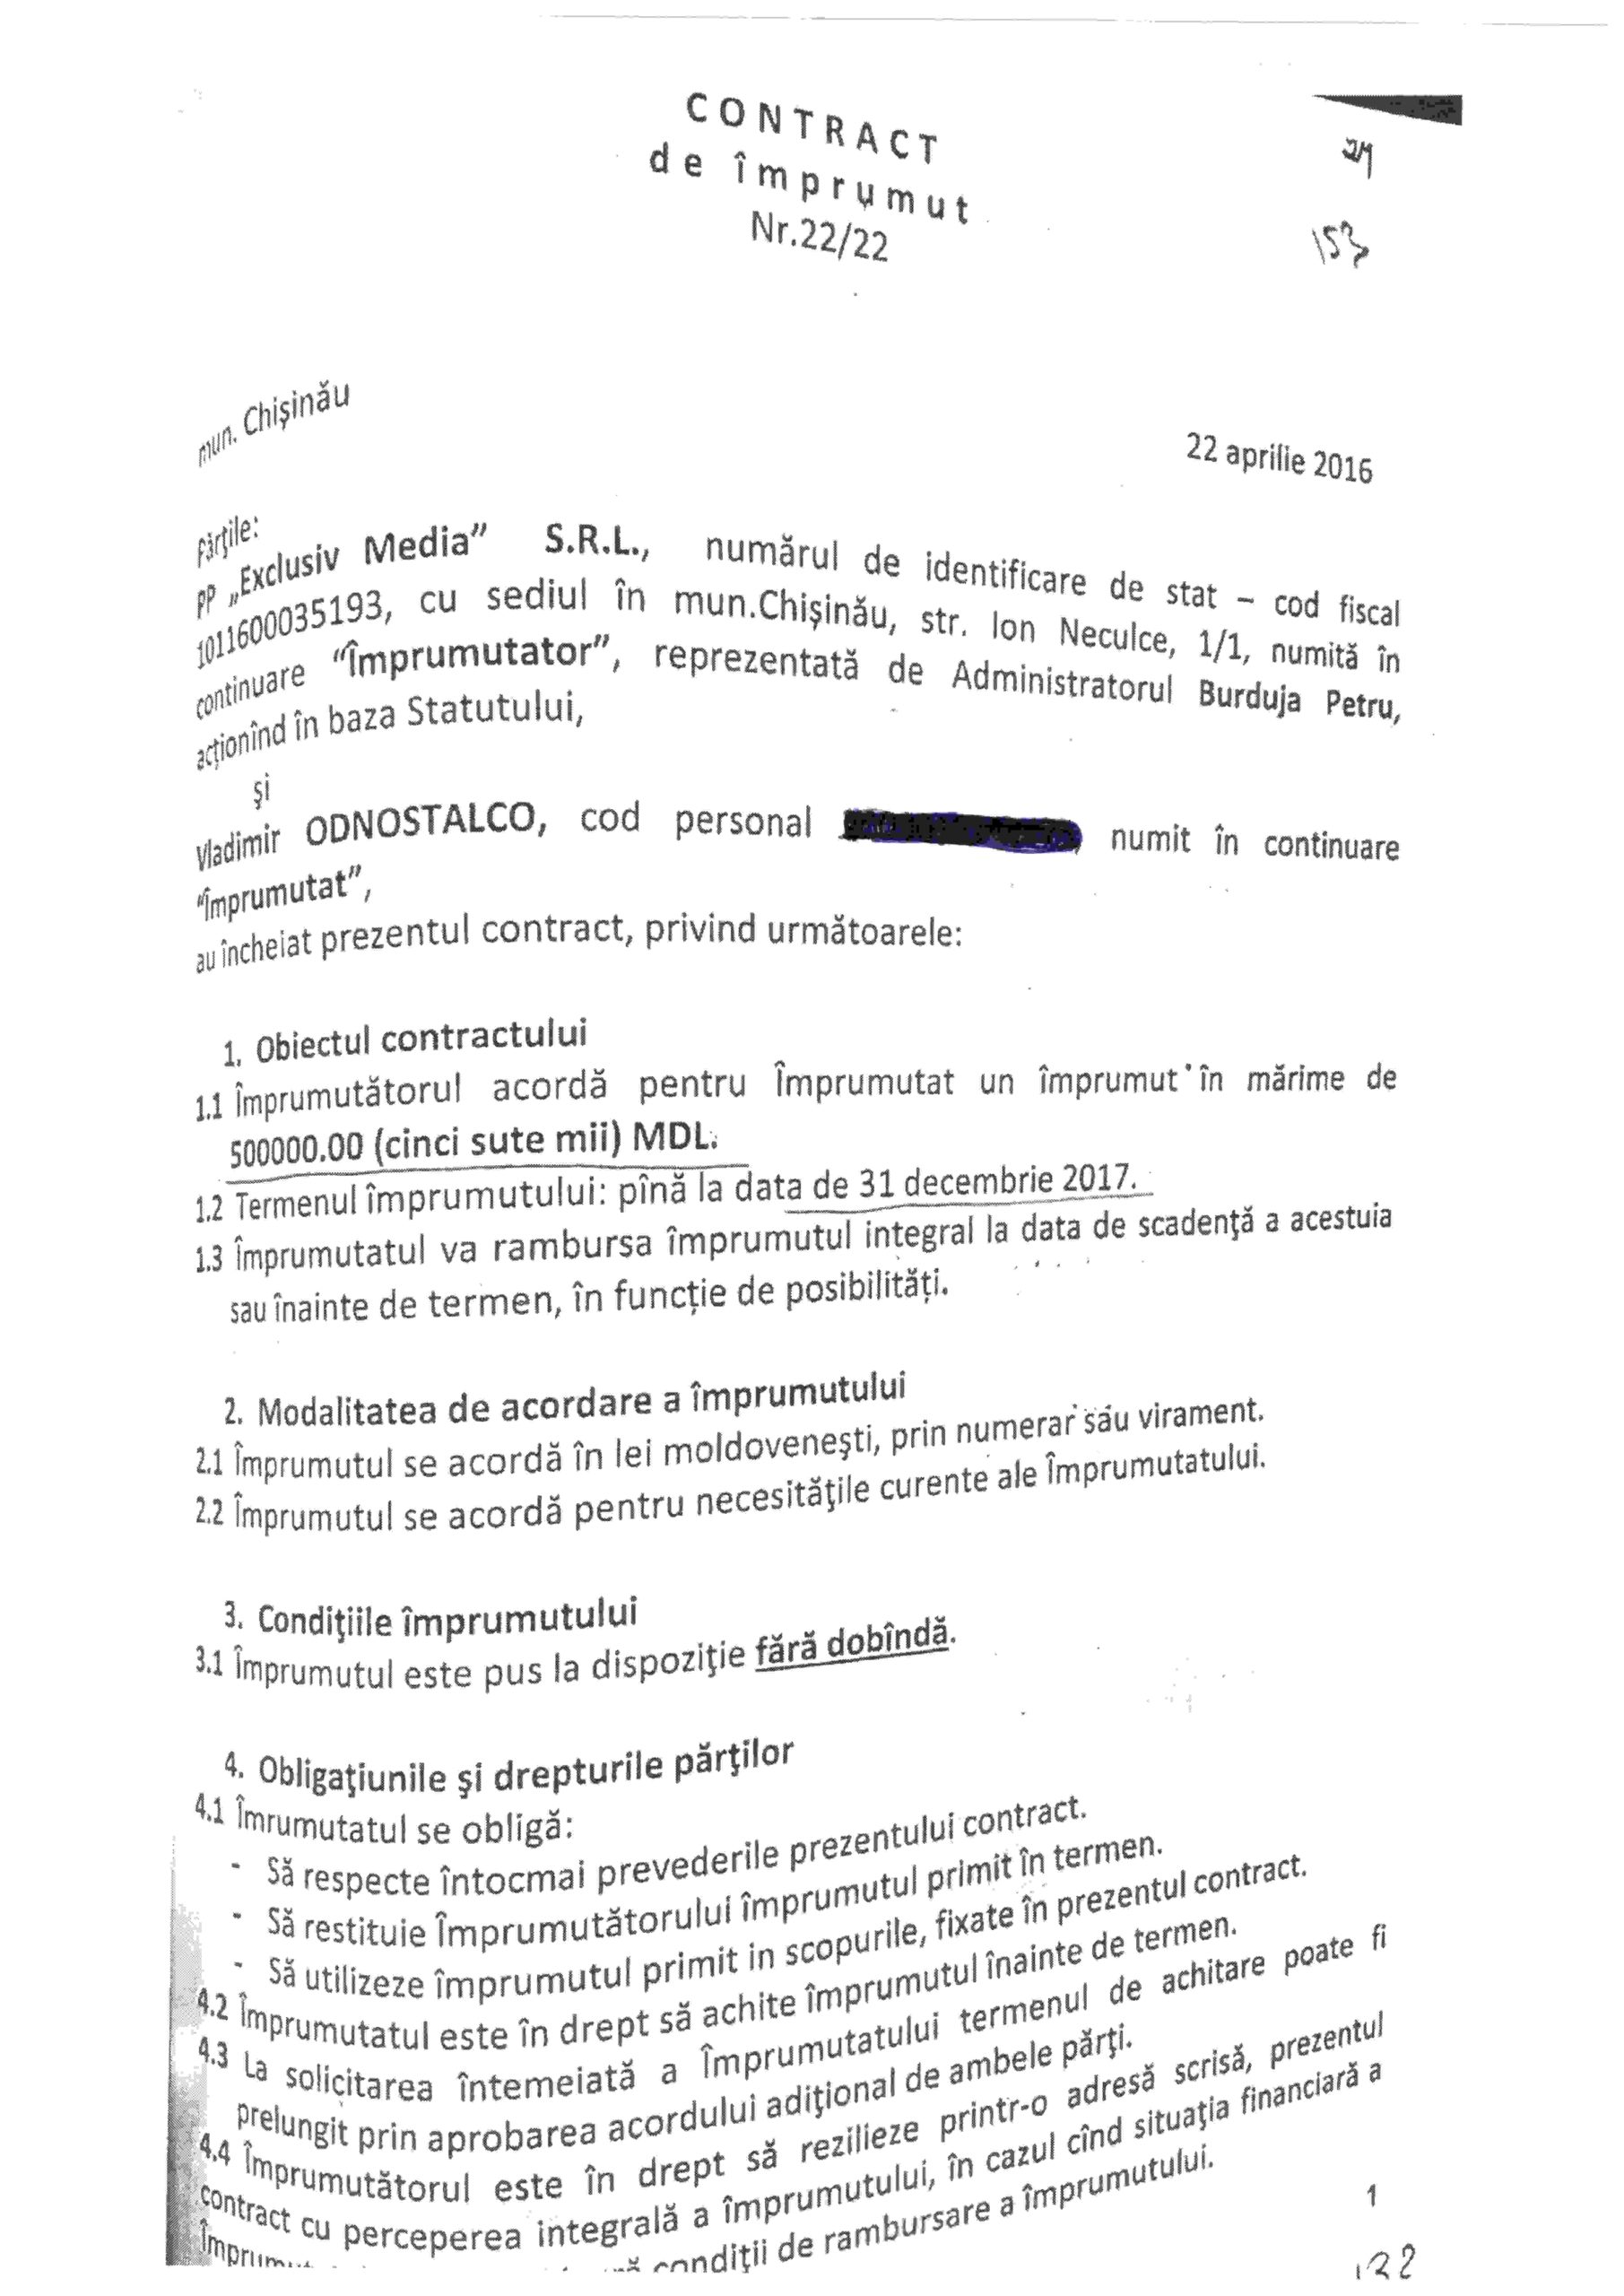 Реницэ и Цыку представили «доказательства» связи депутатов от ПСРМ с «багамской операцией»